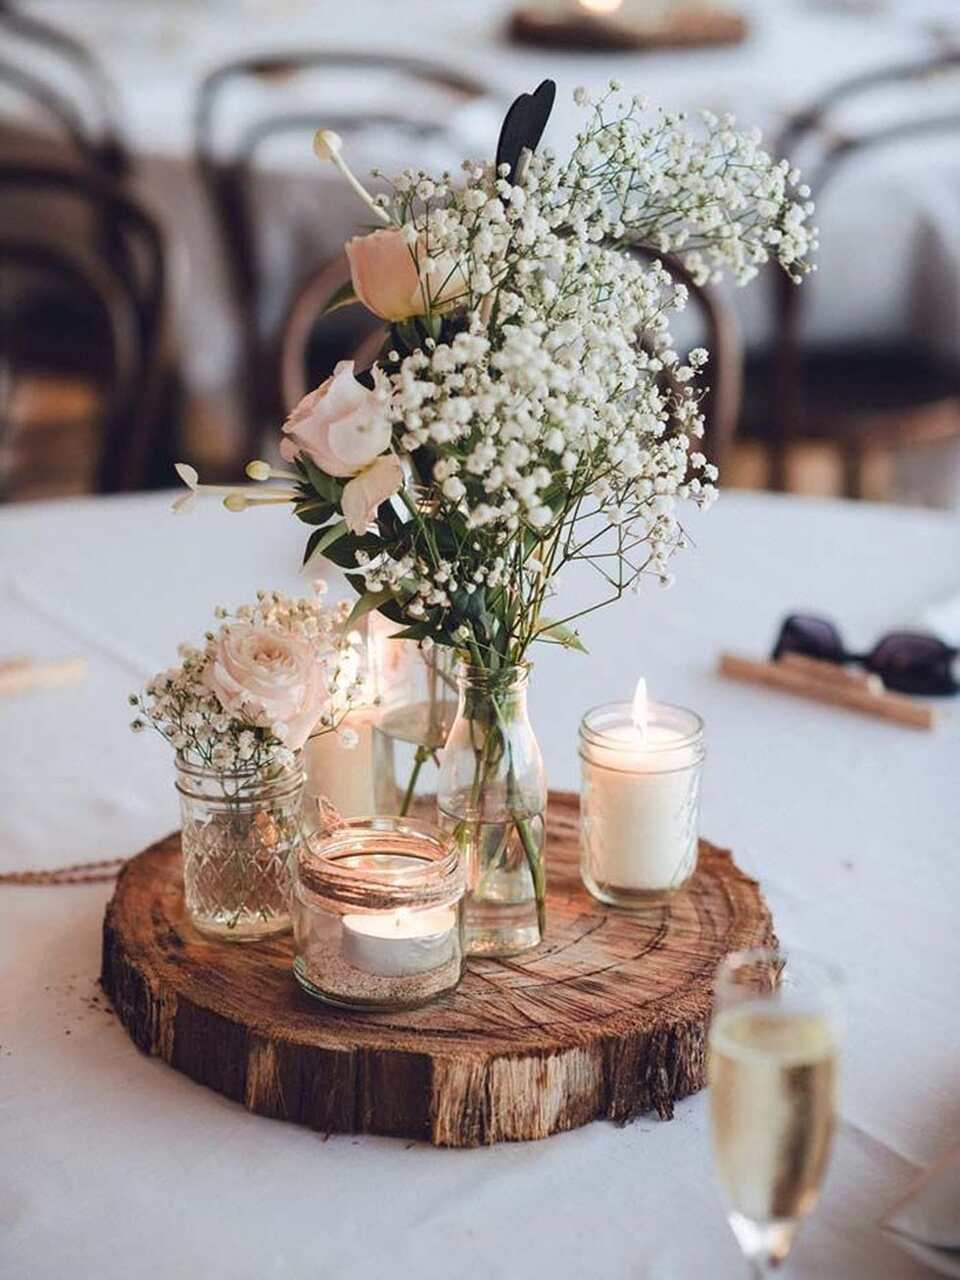 centro de mesa feito com rodela de madeira e copos transparentes com velas e arranjo com flores brancas